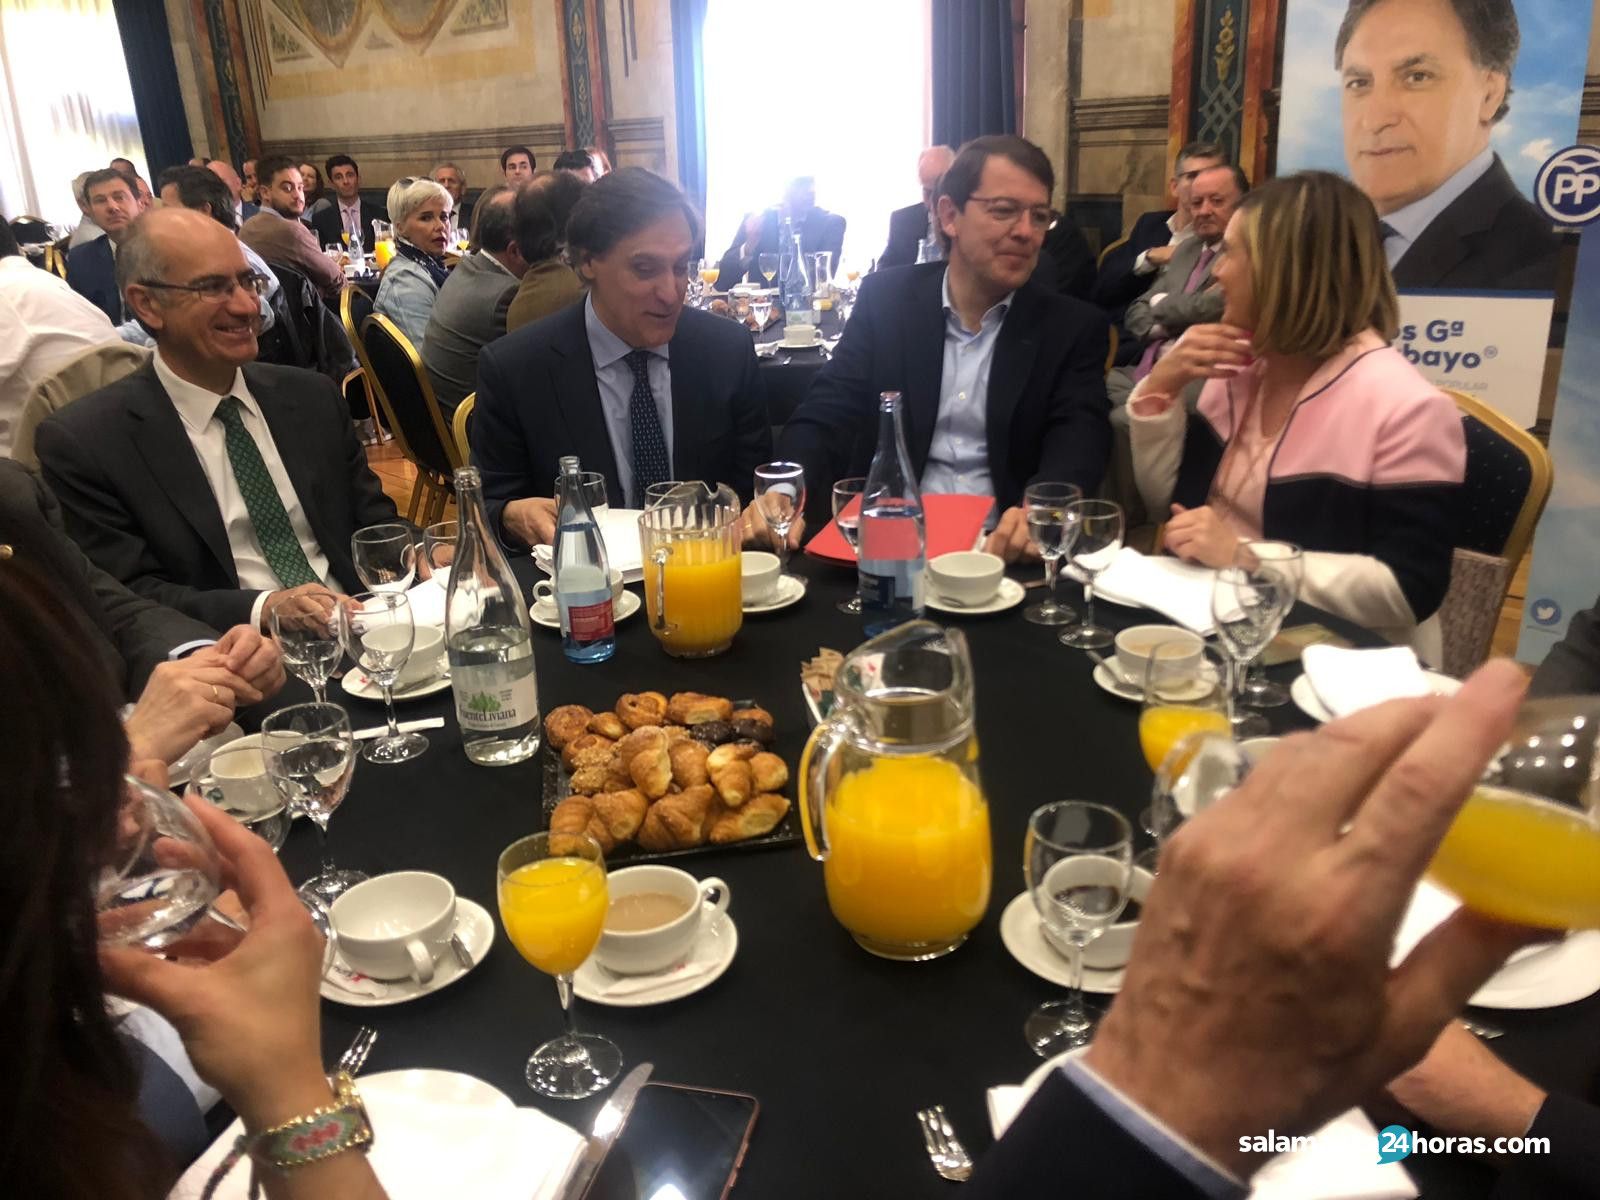  Desayuno del PP con empresarios (4) 